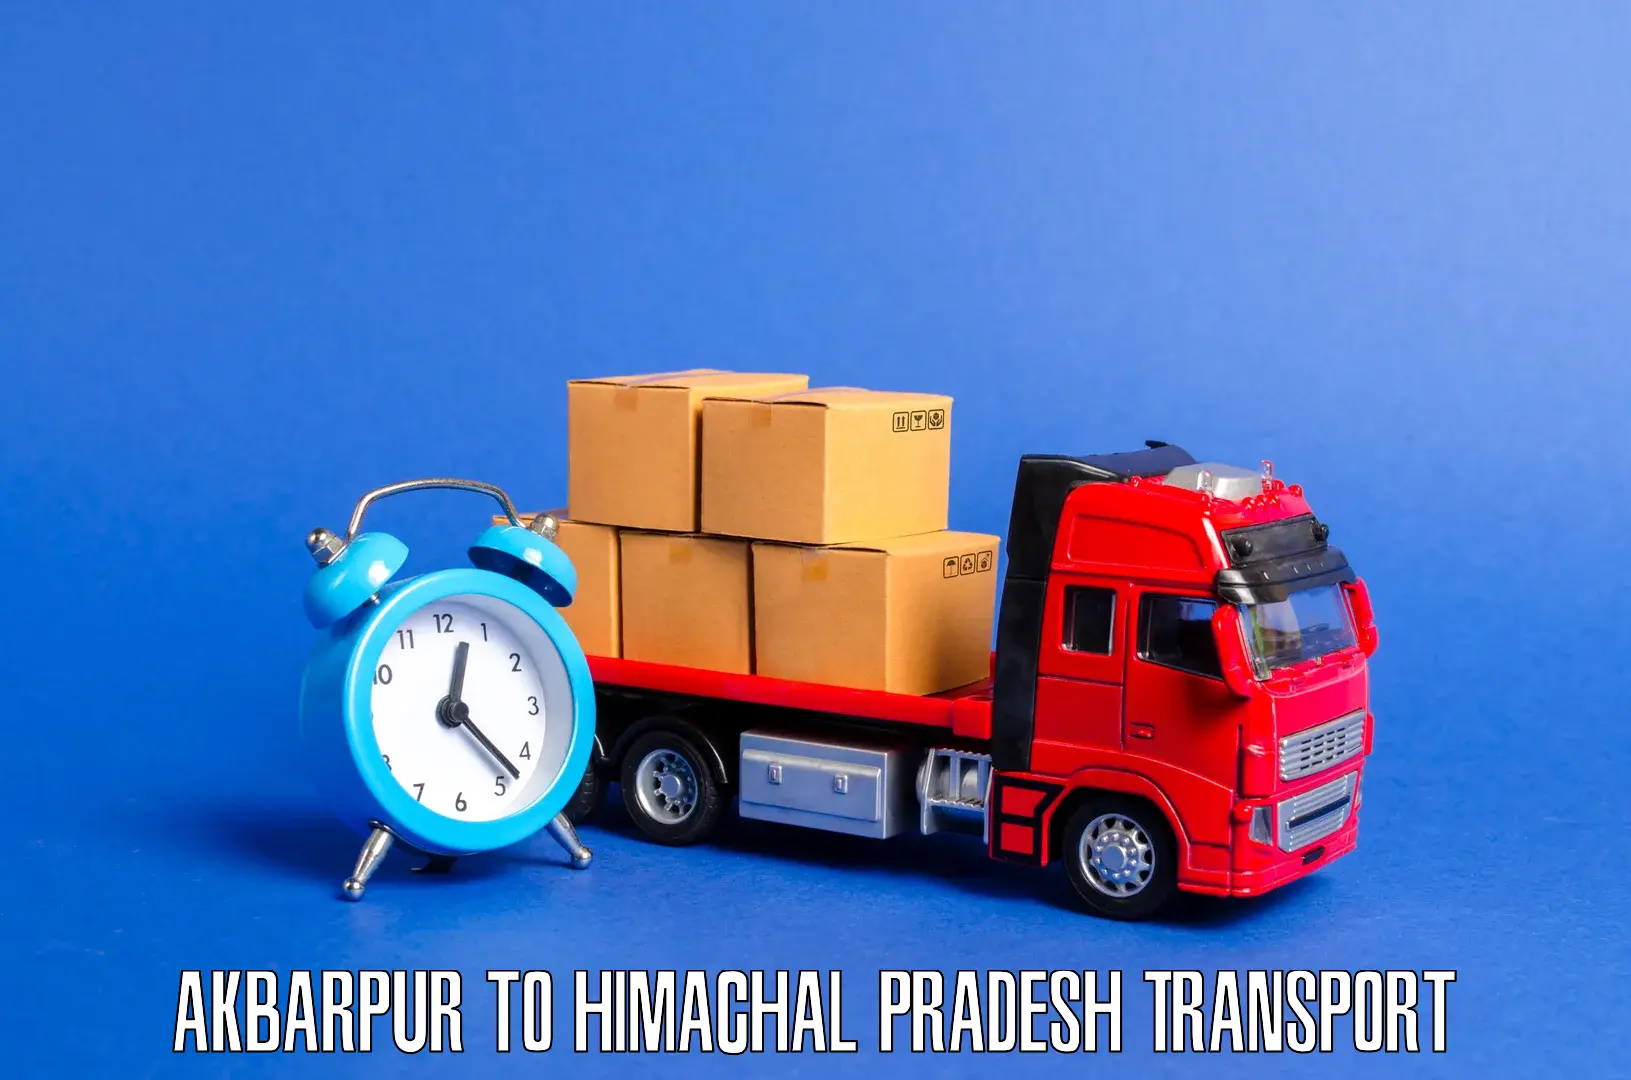 Daily parcel service transport in Akbarpur to Shimla